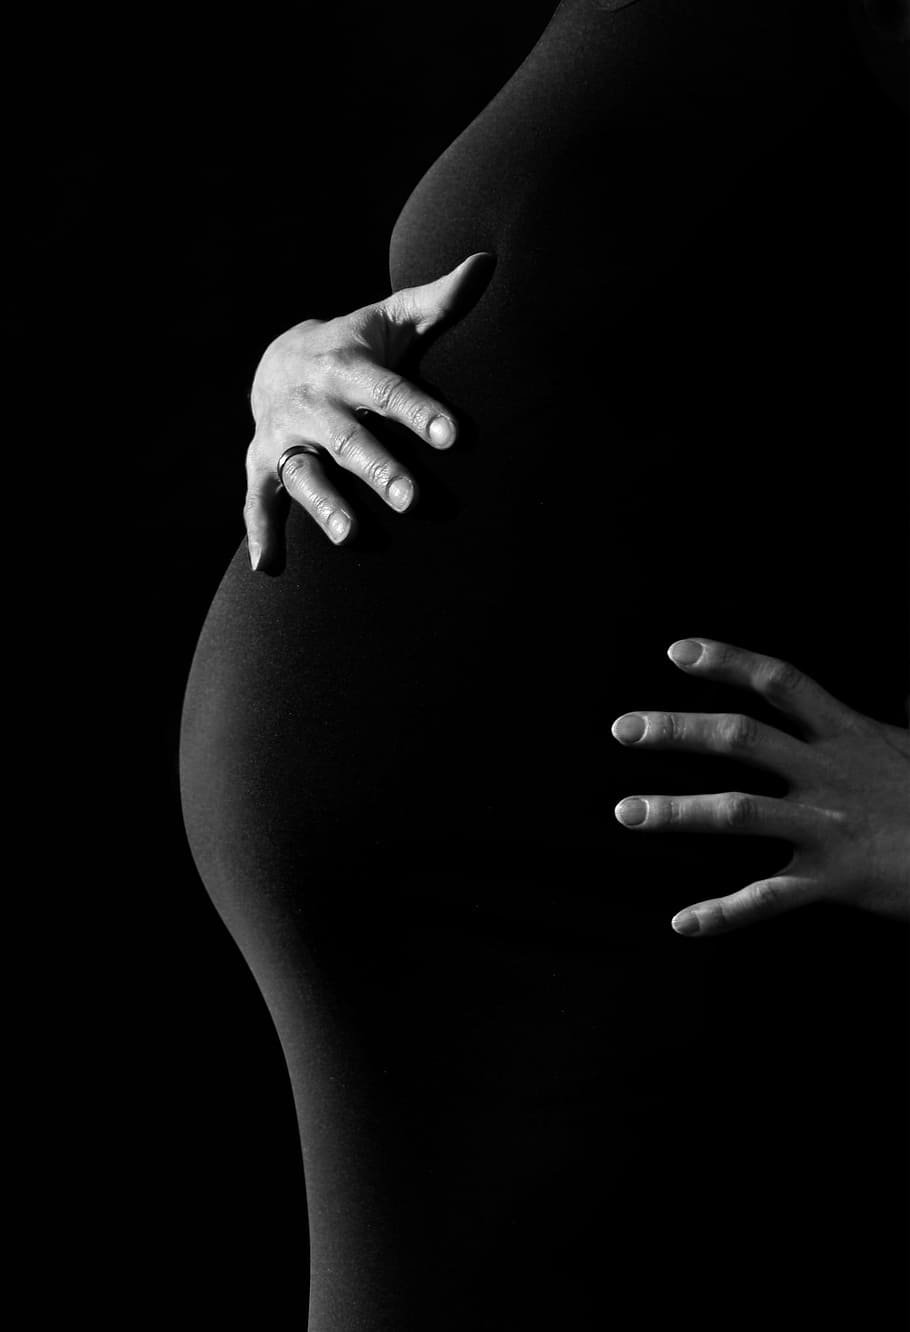 foto em escala de cinza, pessoa, mão, gravidez, mulher, barriga, mãos, chaves, toque, criança